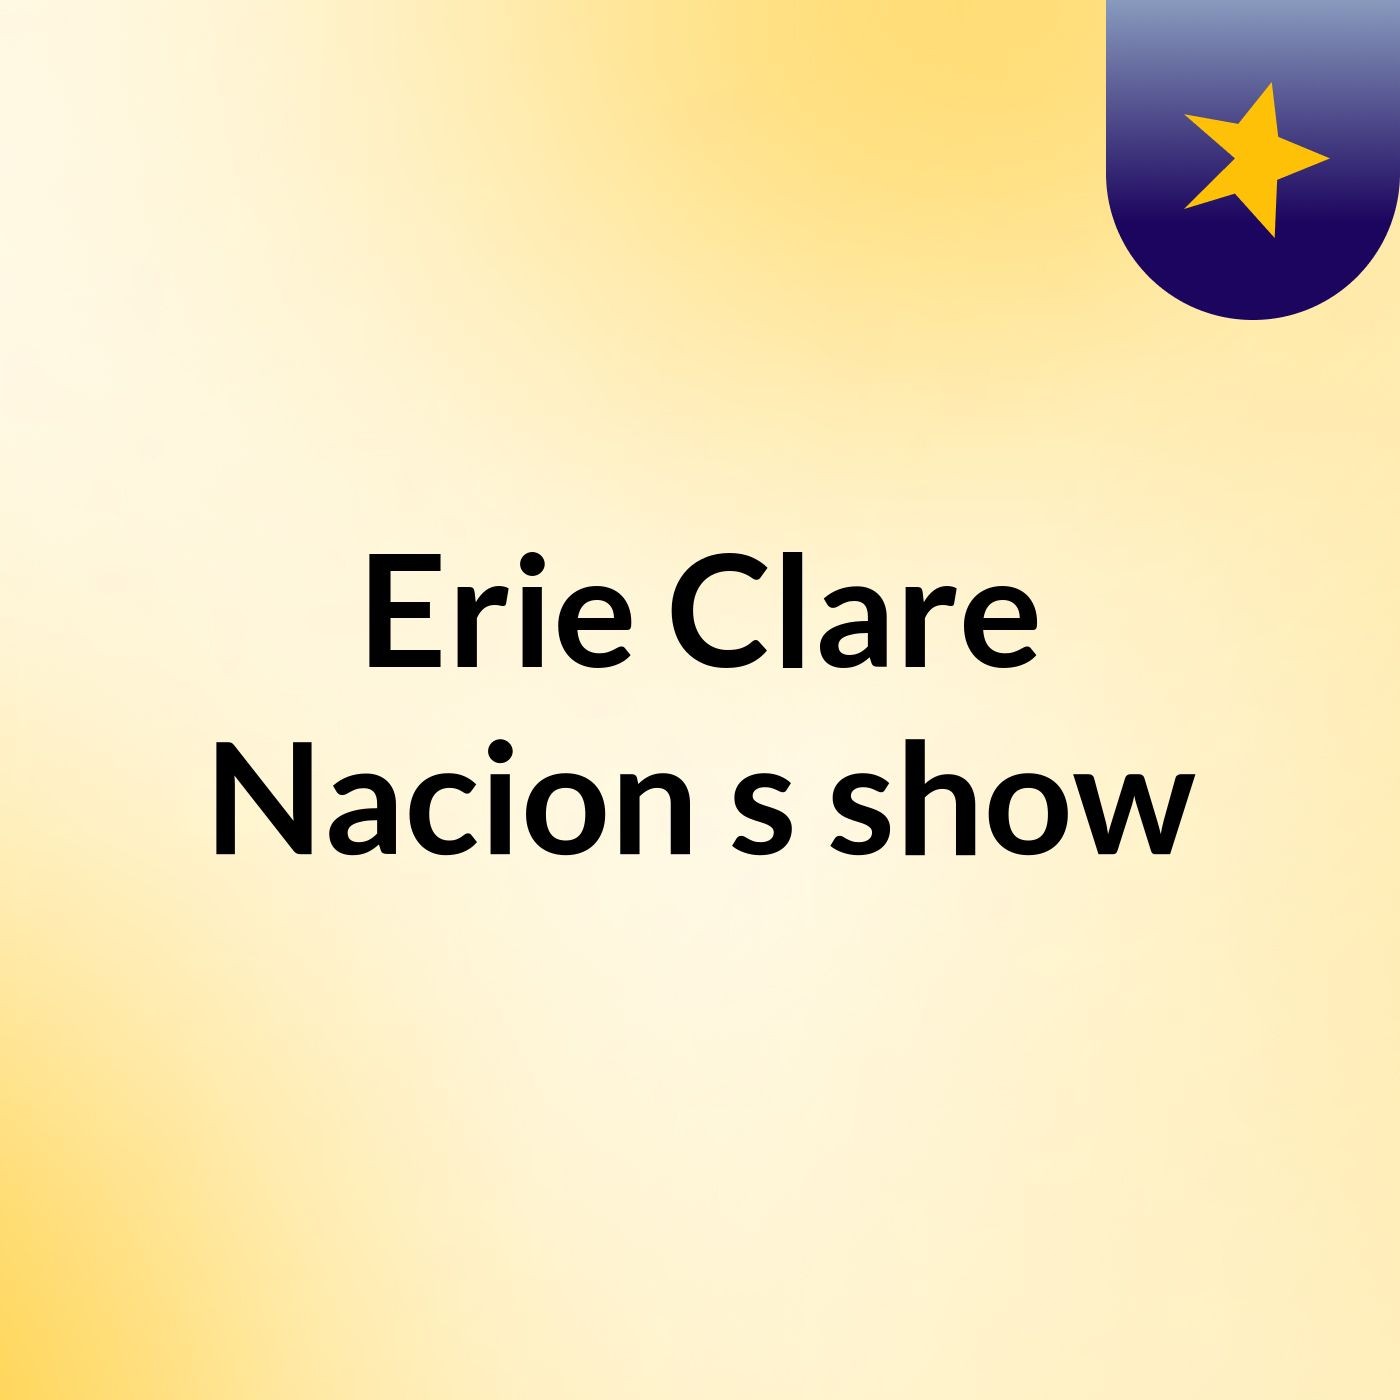 Erie Clare Nacion's show